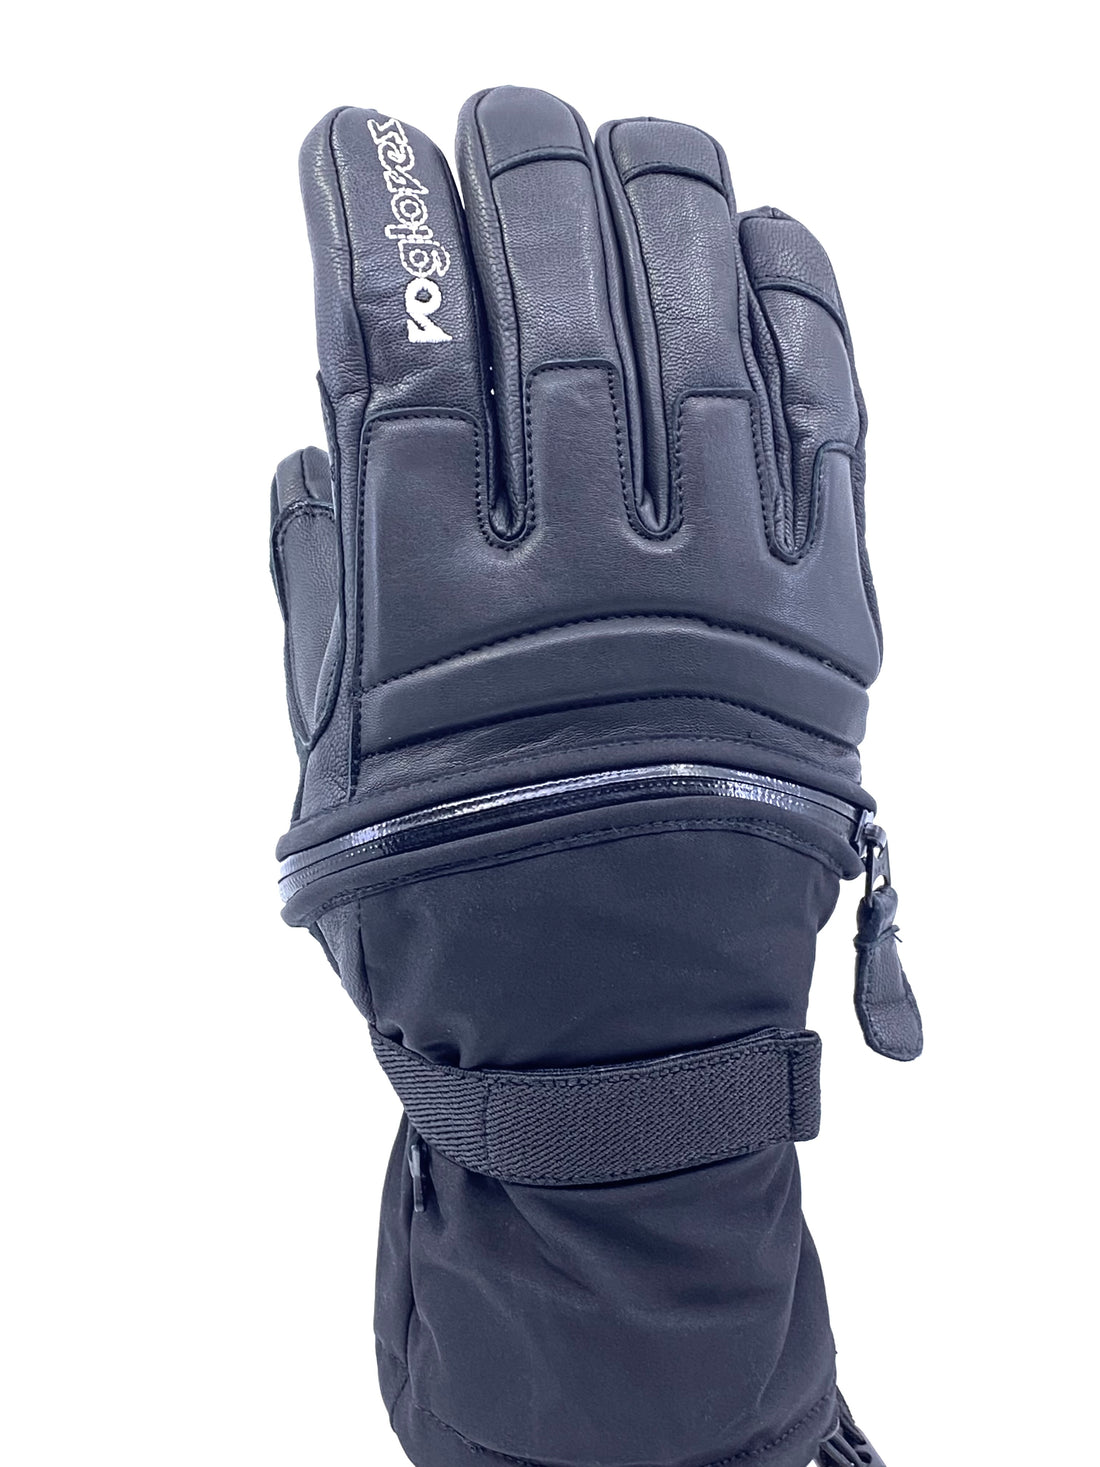 vo gloves, winter, snow, zipper gloves, sandy